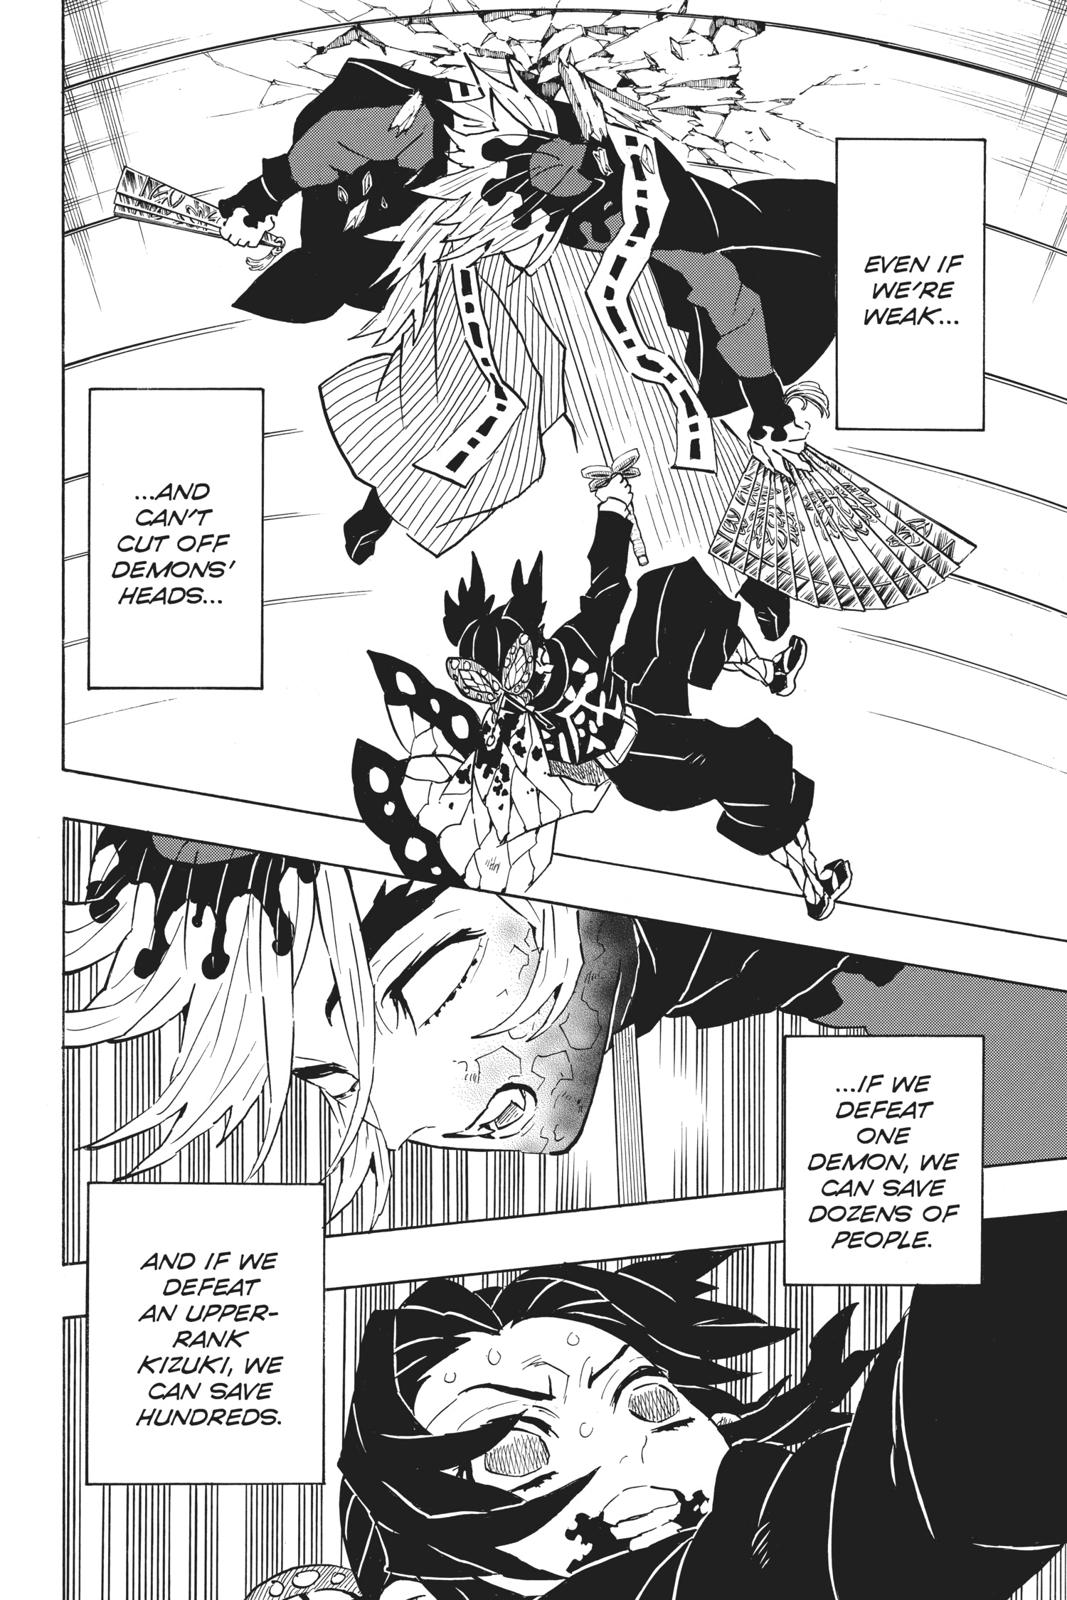 Demon Slayer Manga Manga Chapter - 143 - image 7